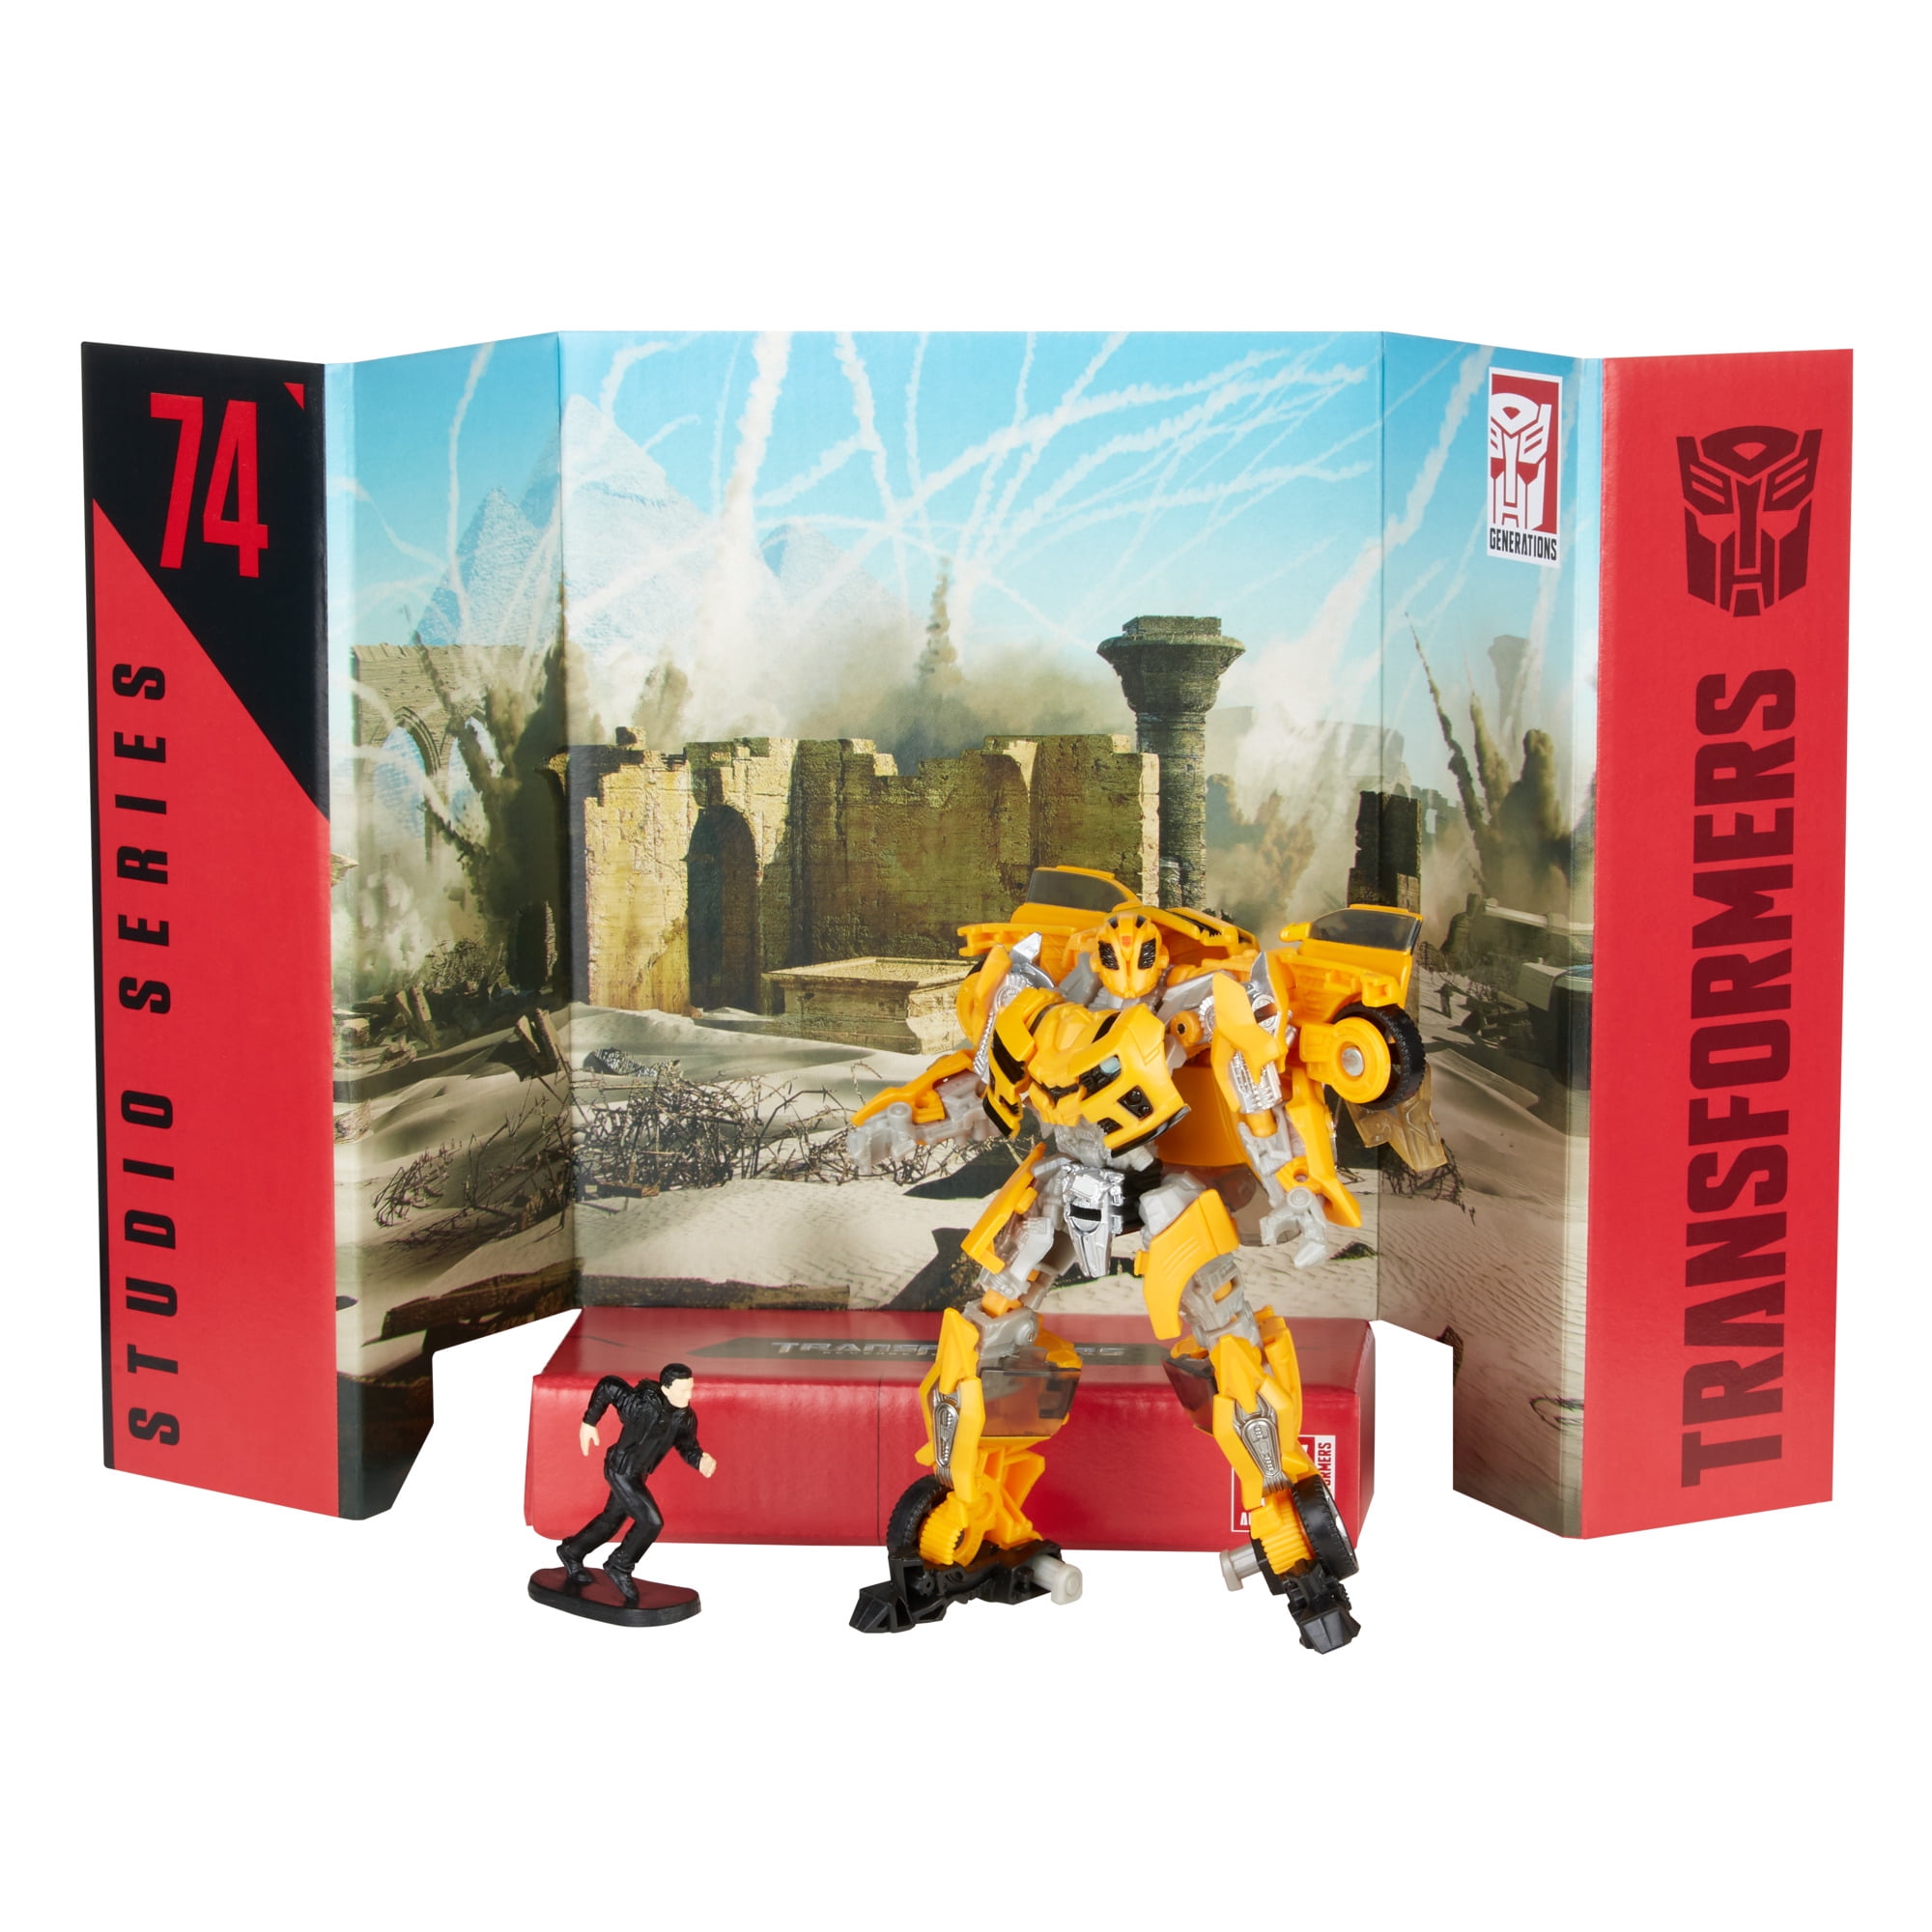 Transformers Studio Series 74 Deluxe Class Revenge of the Fallen 